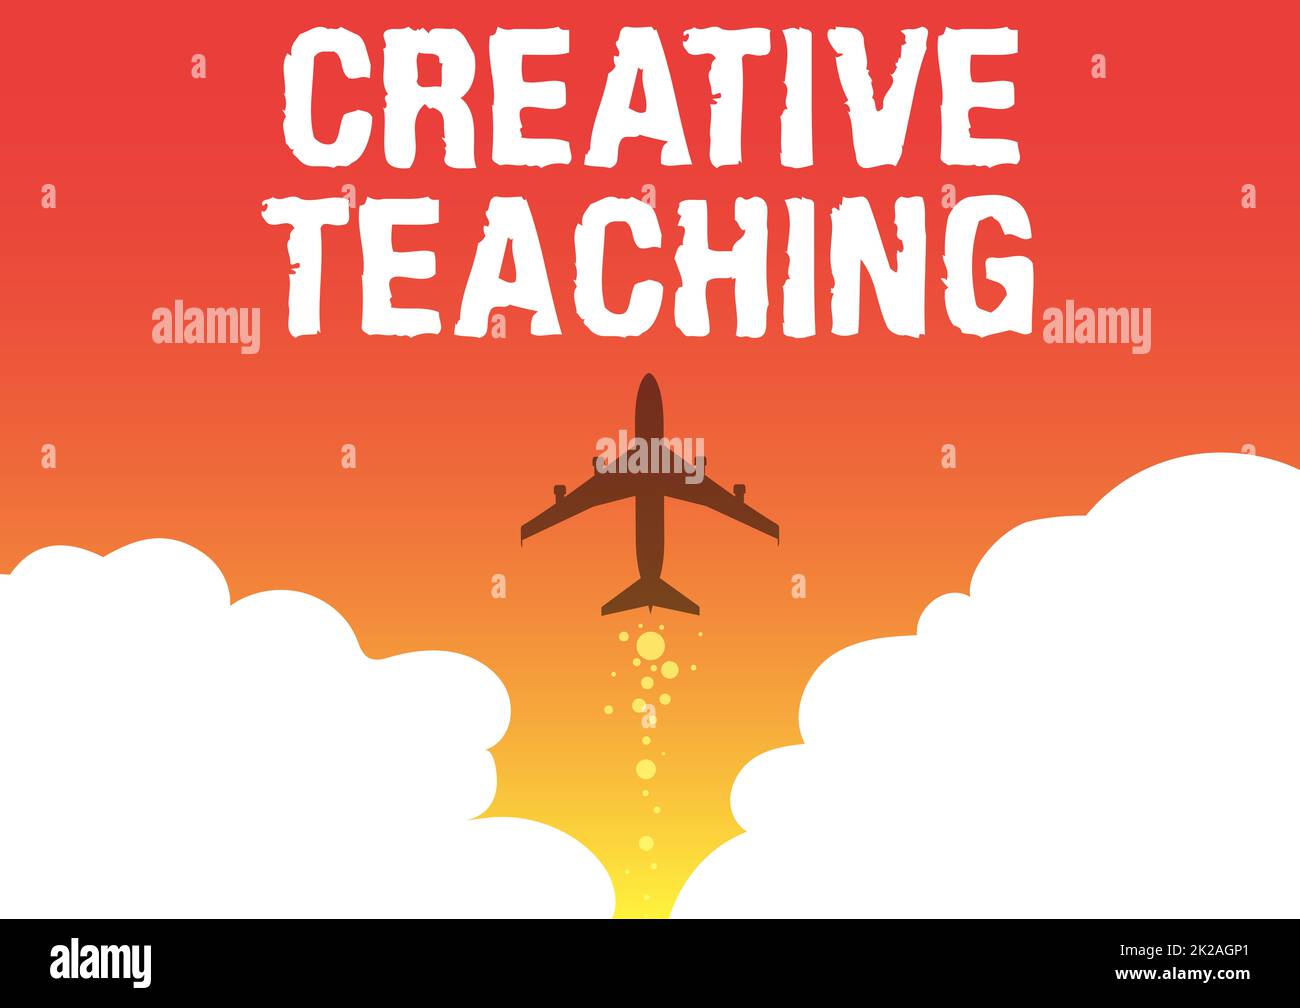 Inspiration zeigt Zeichen Kreative Lehre, Geschäftsidee der Akt des Coachings auf neuartige Weise, die das Wachstum fördert Illustration der Flugzeugeinführung FAS Stockfoto